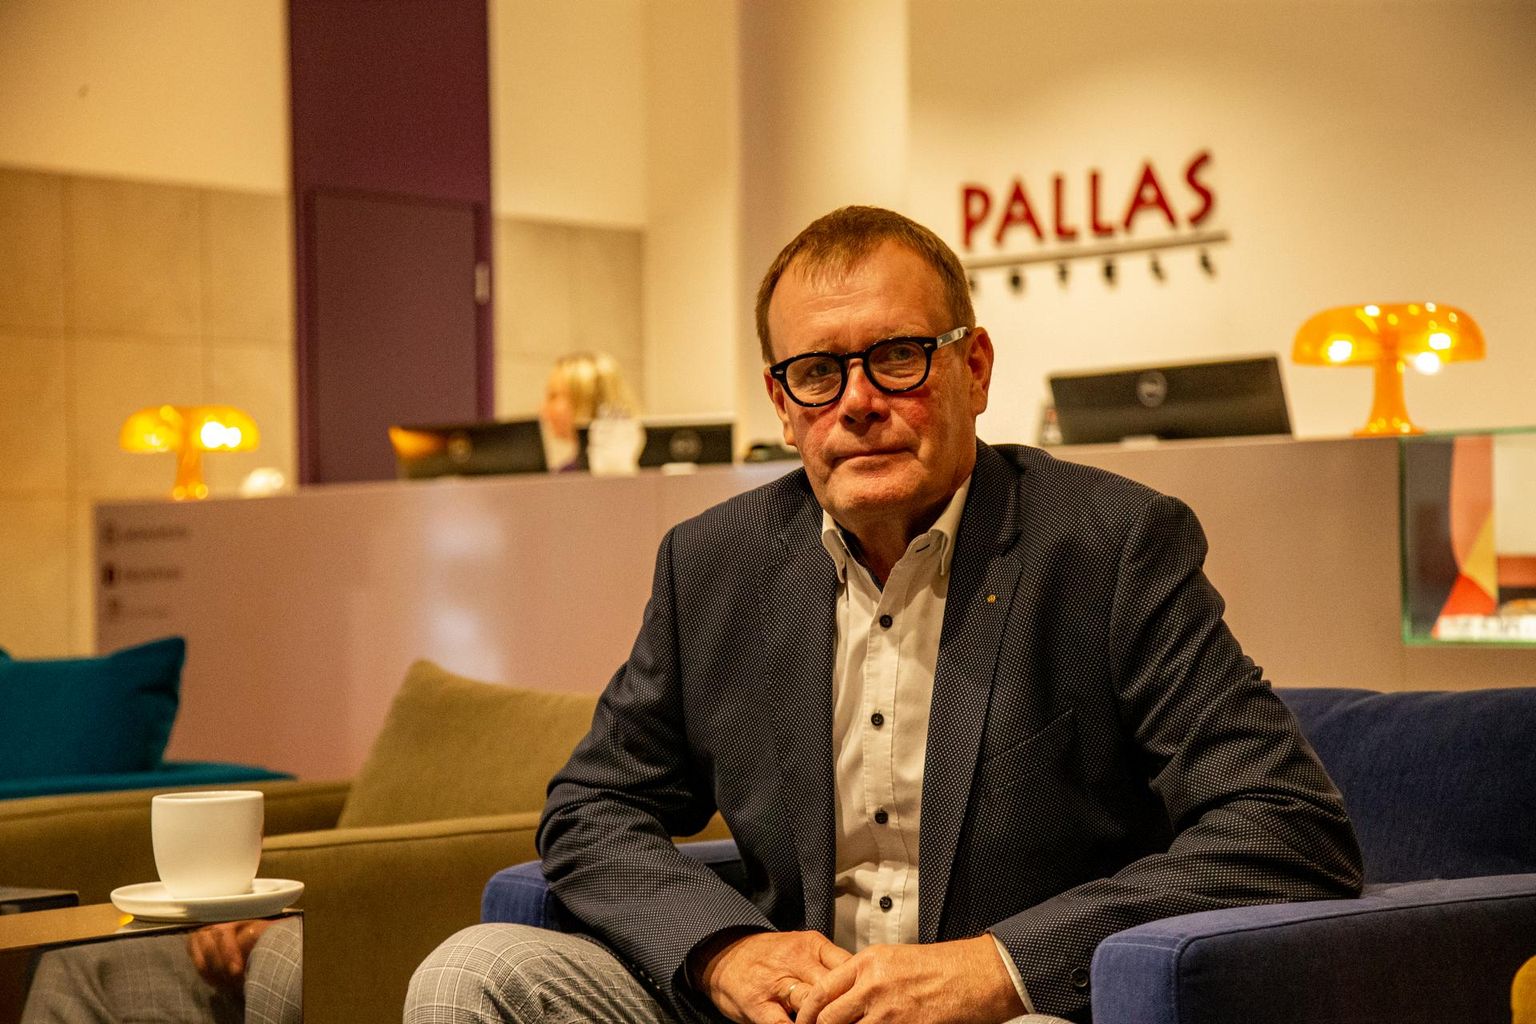 Pallase hotelli juht Verni Loodmaa ütles eile, et Eesti riik peaks käituma sarnaselt põhjanaabritega ja tulema ettevõtetele appi, sest muidu kannatab kogu riigi konkurentsivõime.